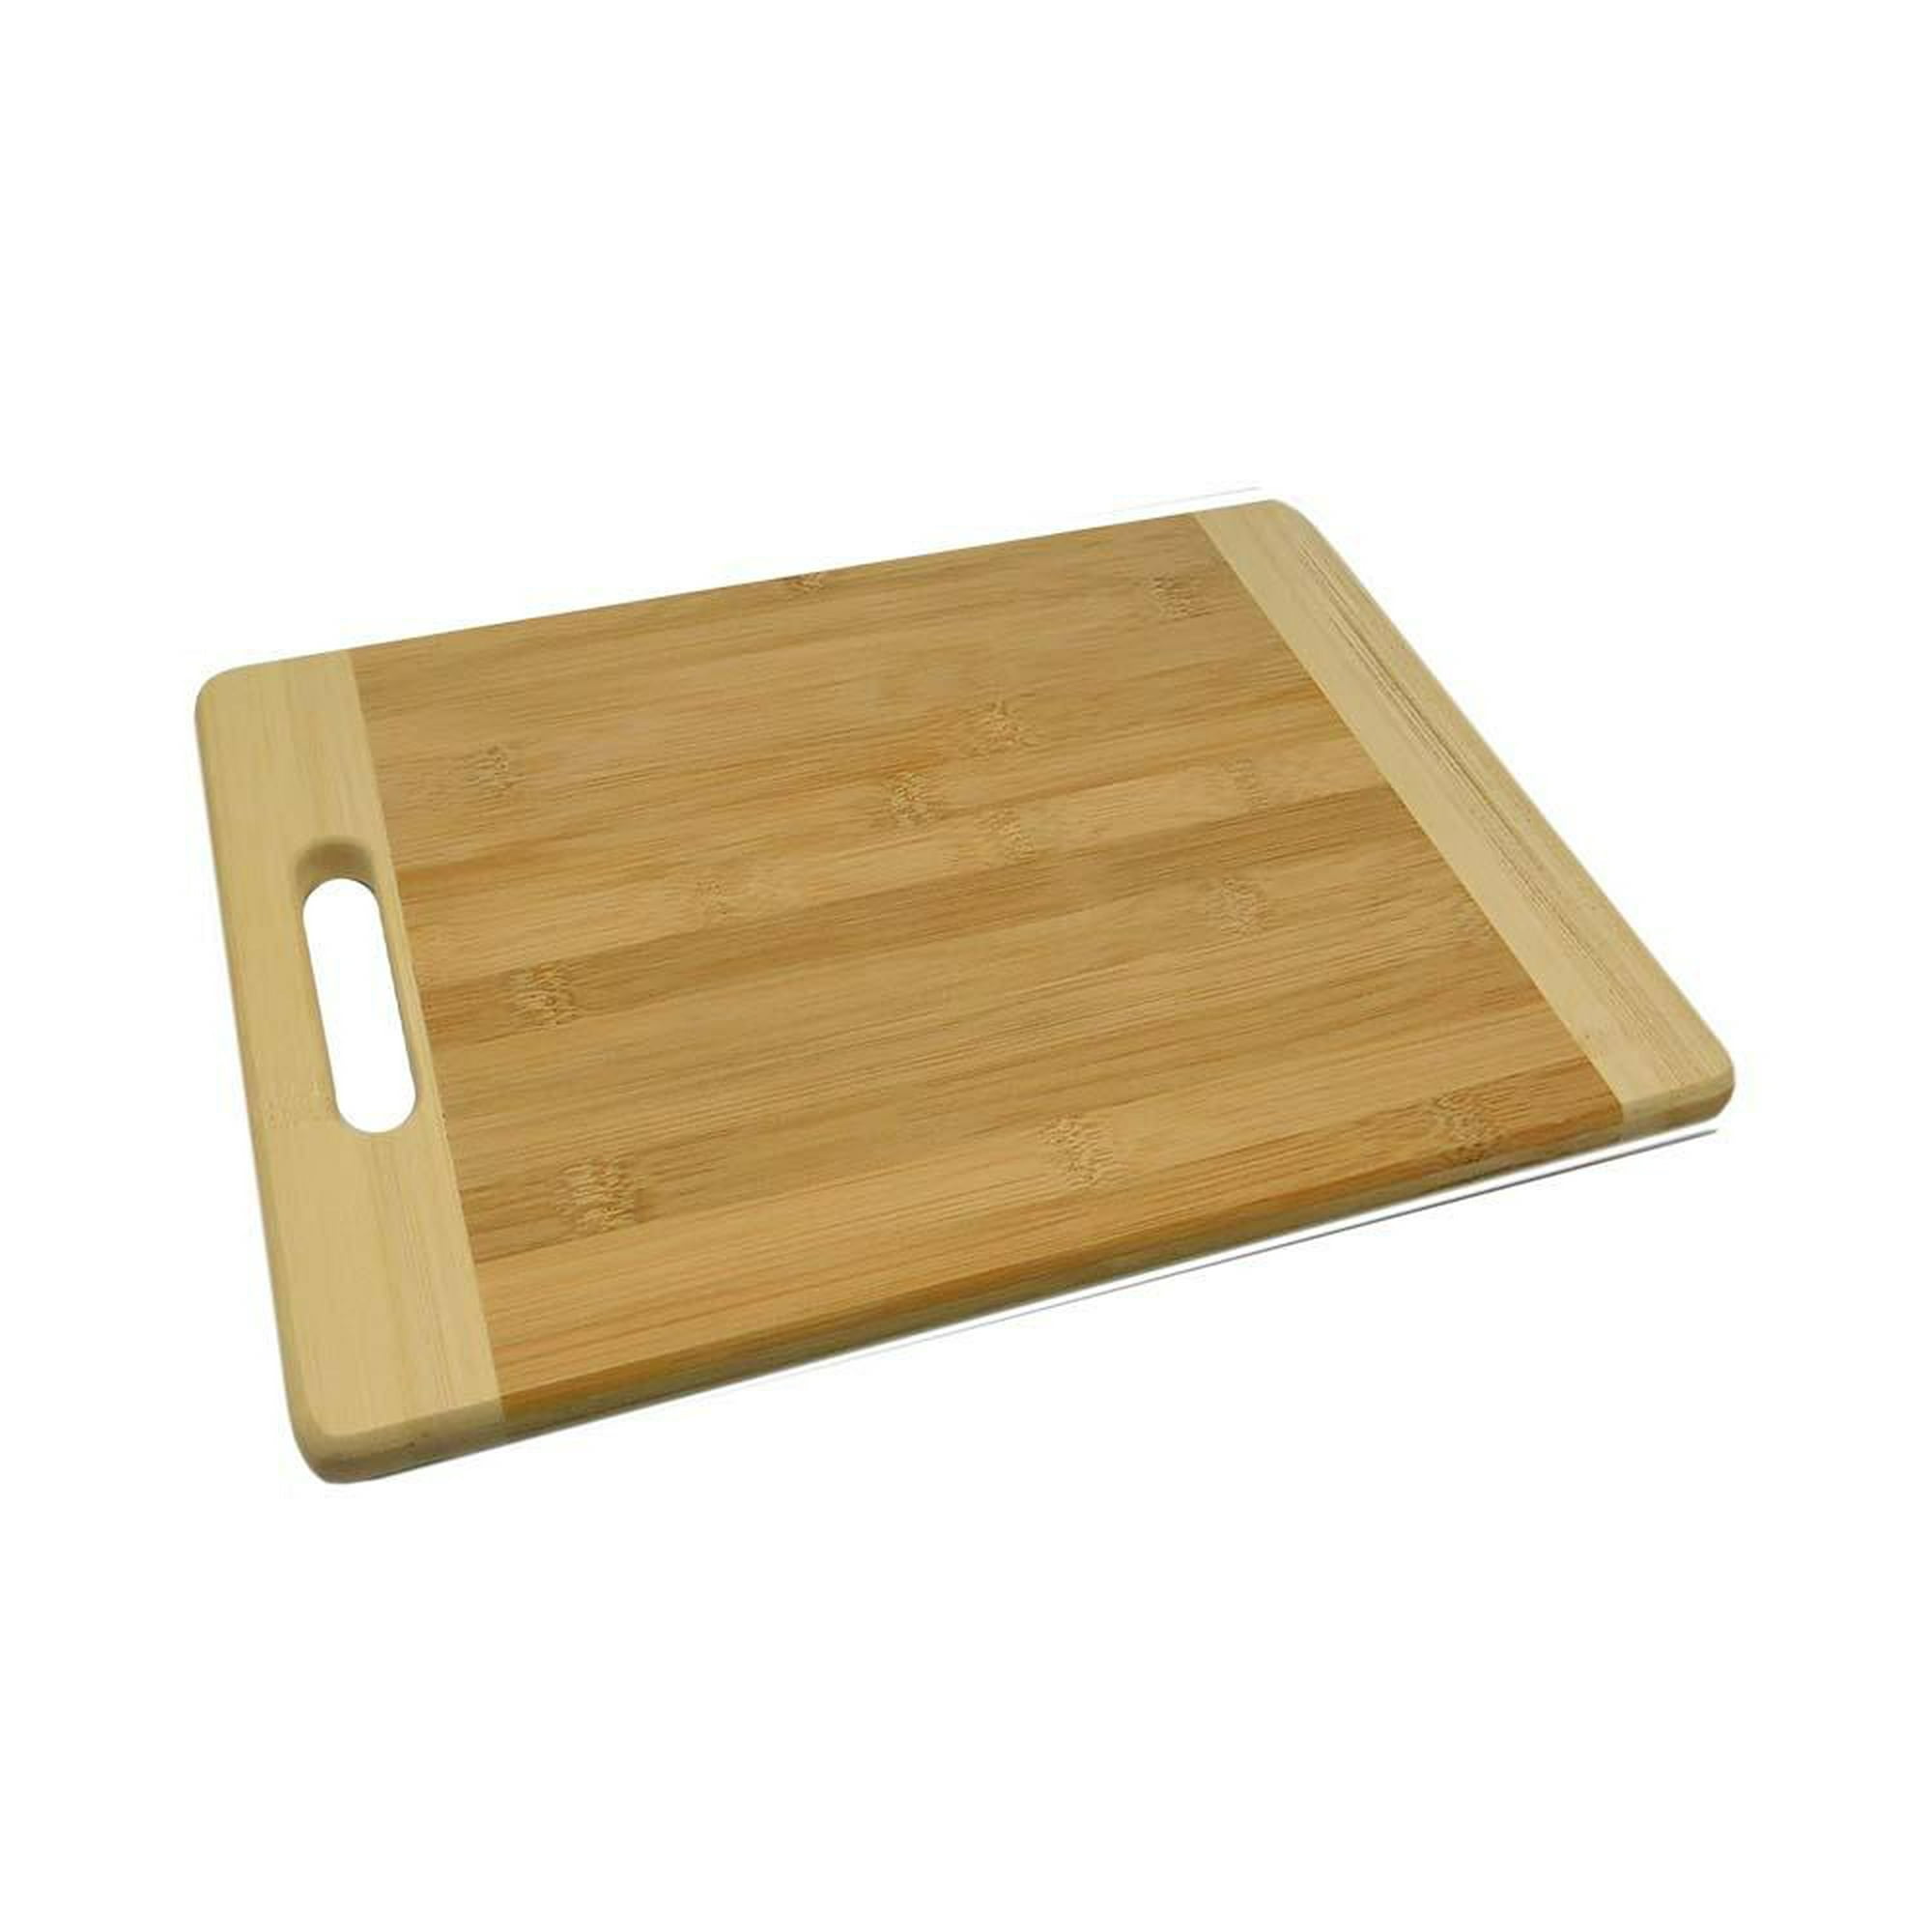 Salud, ¿Por qué no es recomendable usar tabla de picar de madera?, TECNOLOGIA